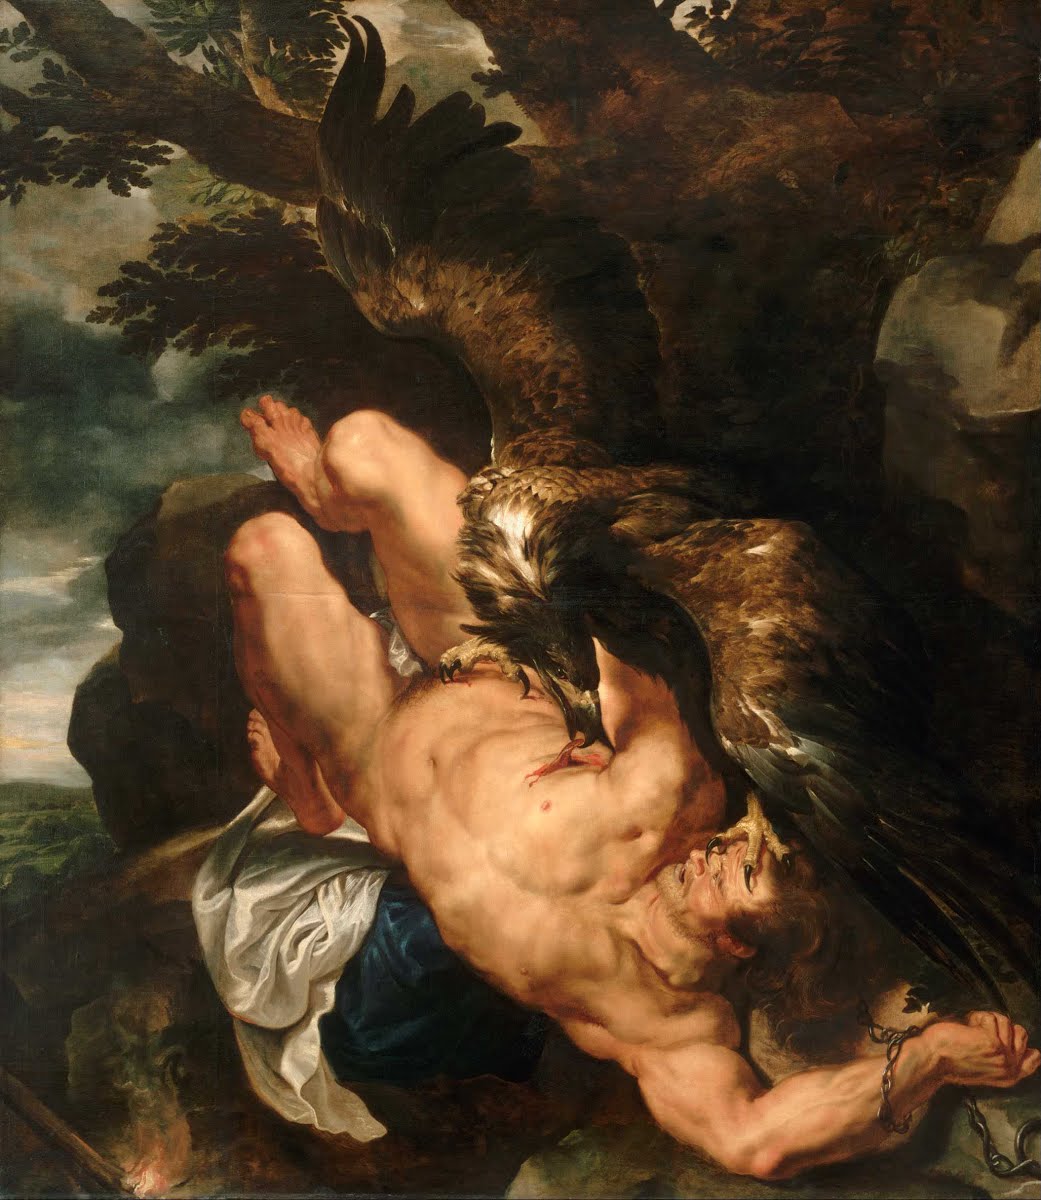 Связанный Прометей by Peter Paul Rubens - 1611-12 -  2,44 м х 2,1 м 